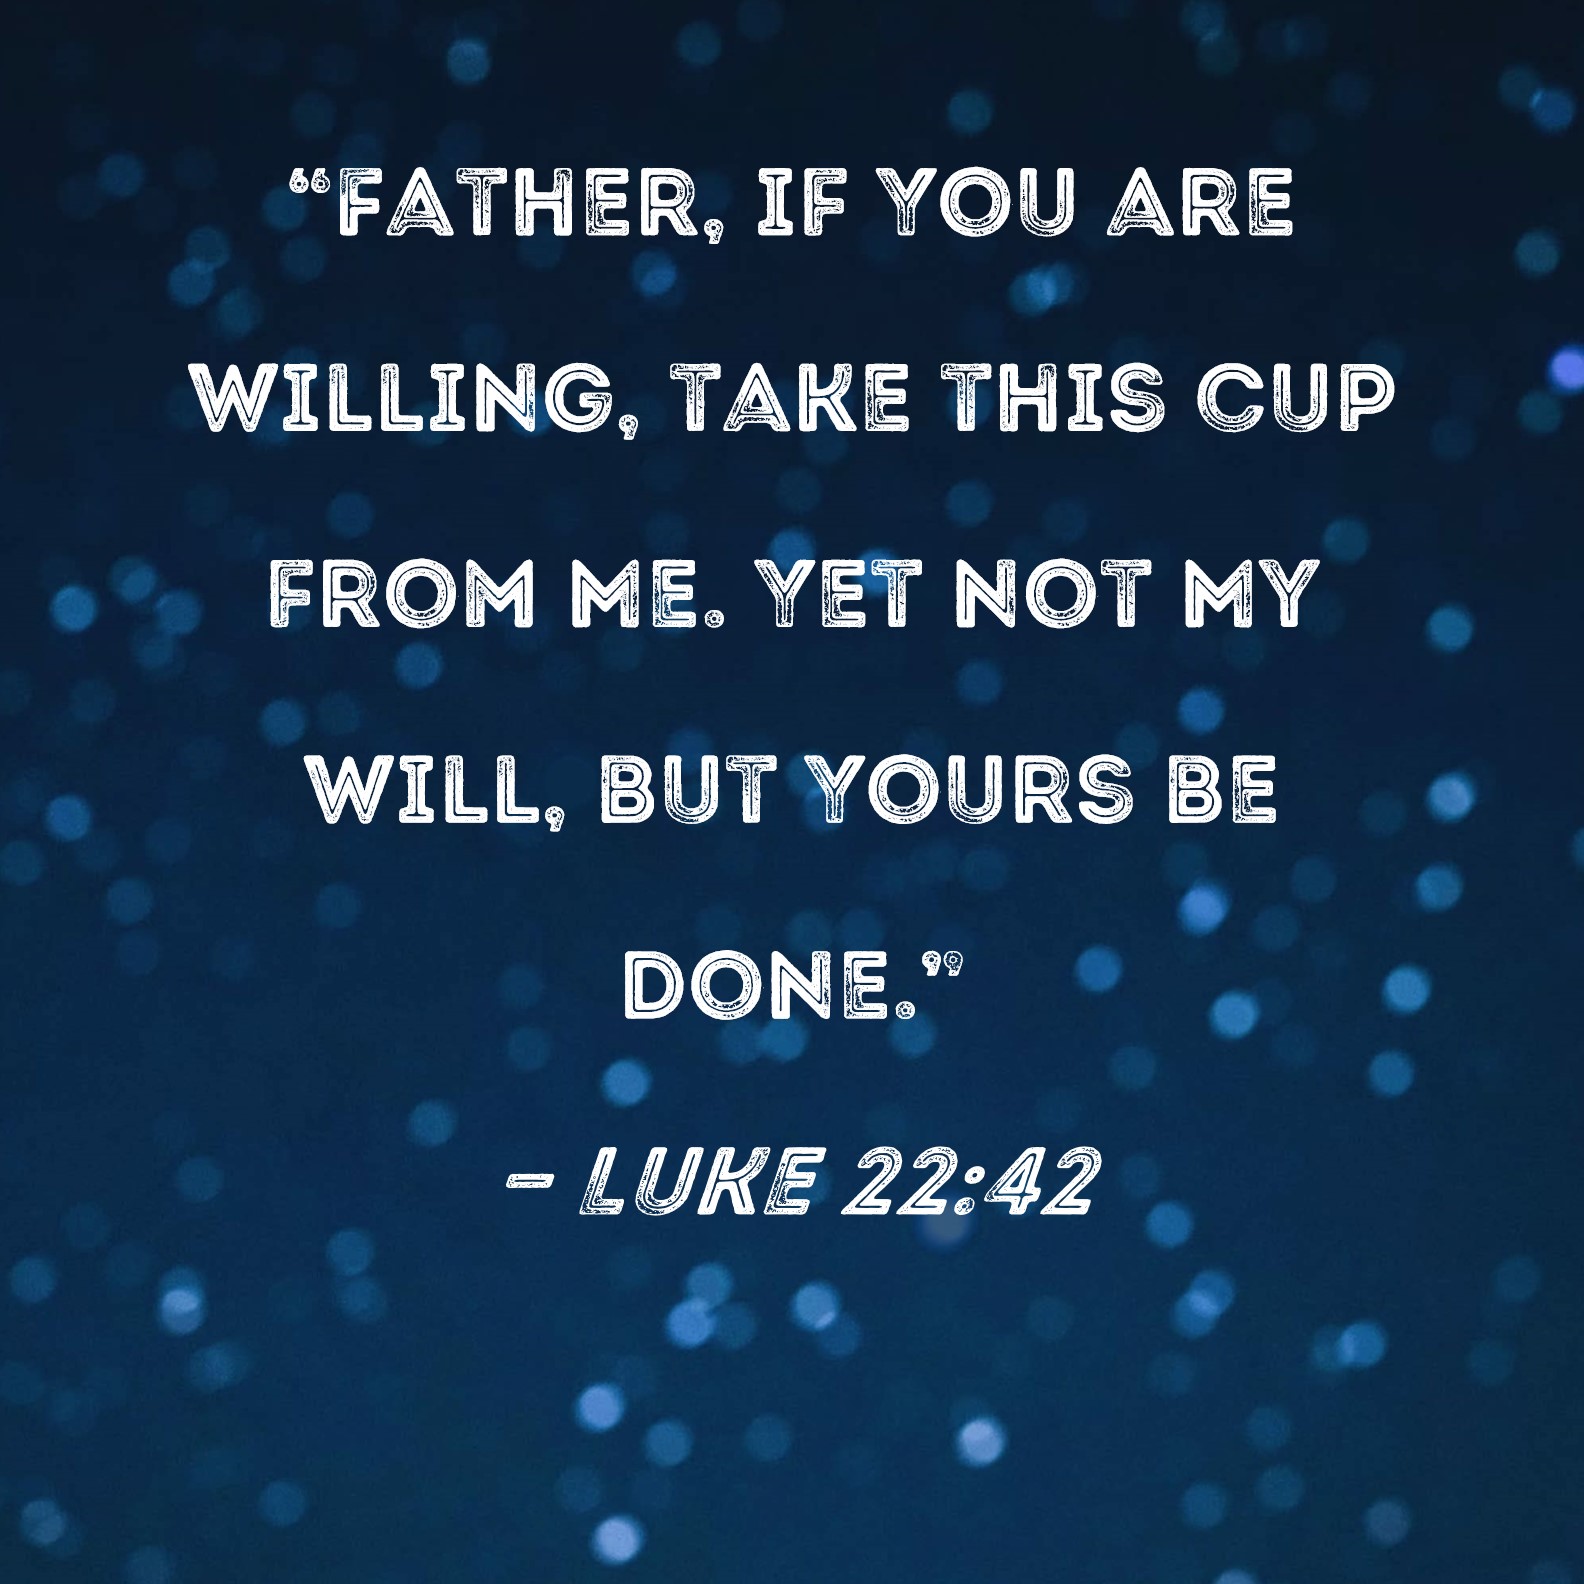 No se haga mi voluntad, sino la tuya: Marcos 14:36 y Lucas 22:42